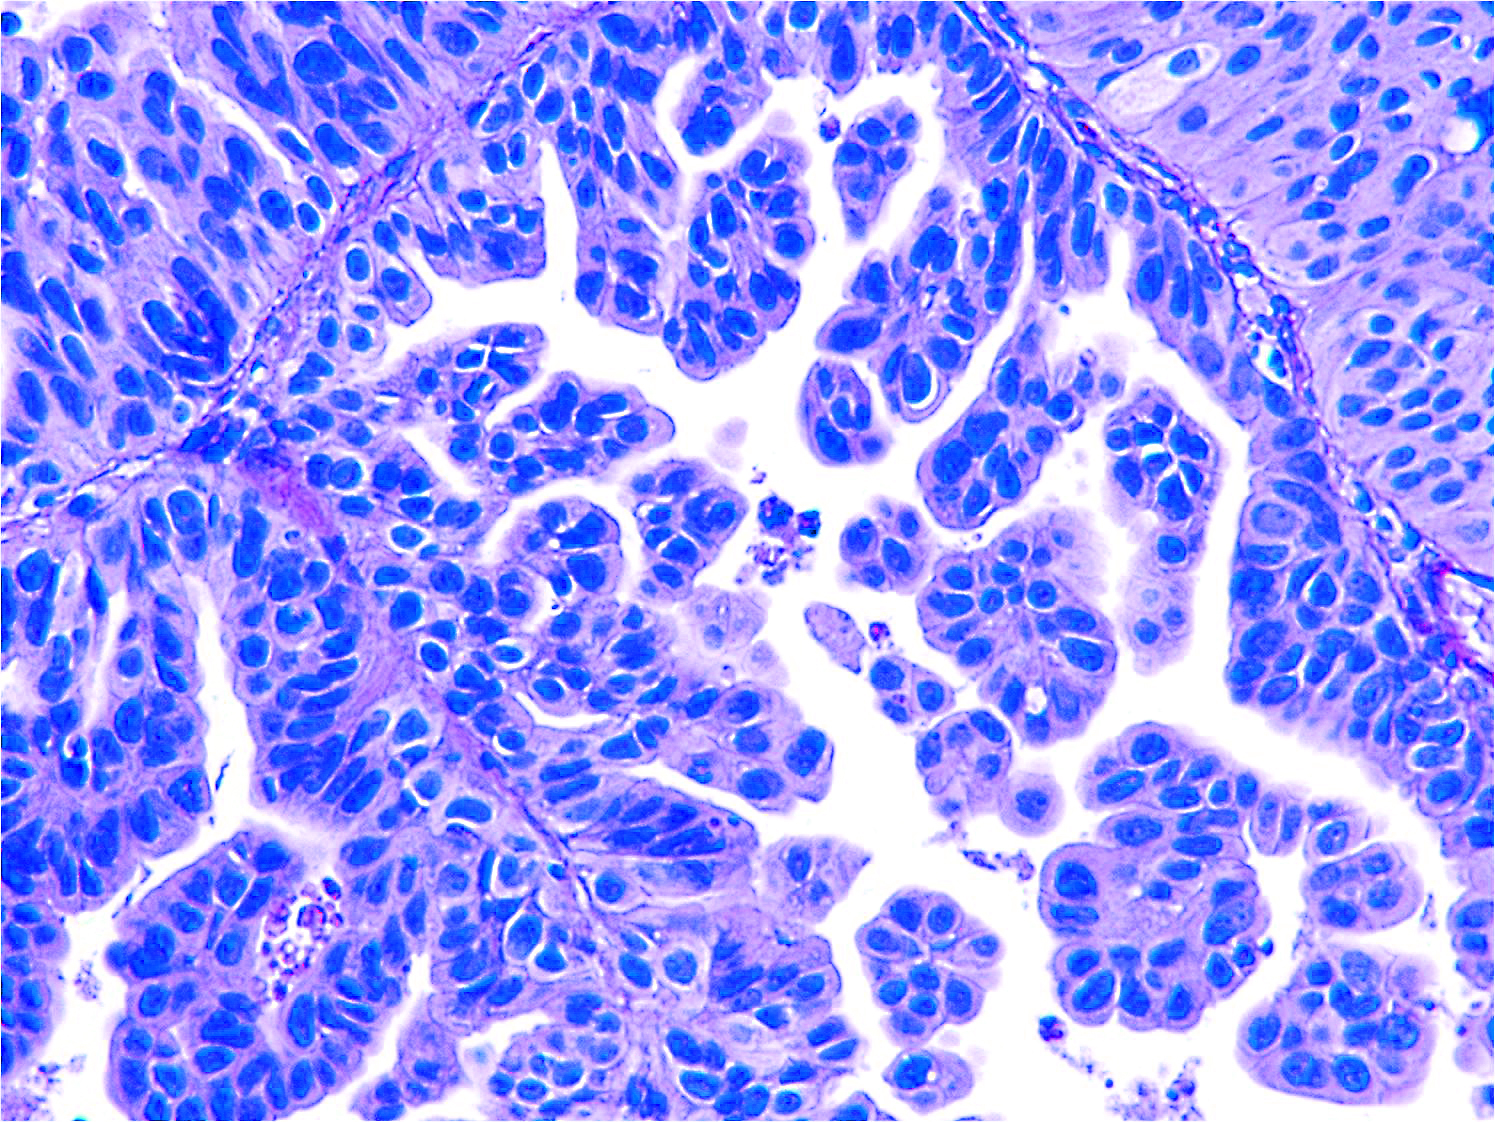 Bladder cancer cells